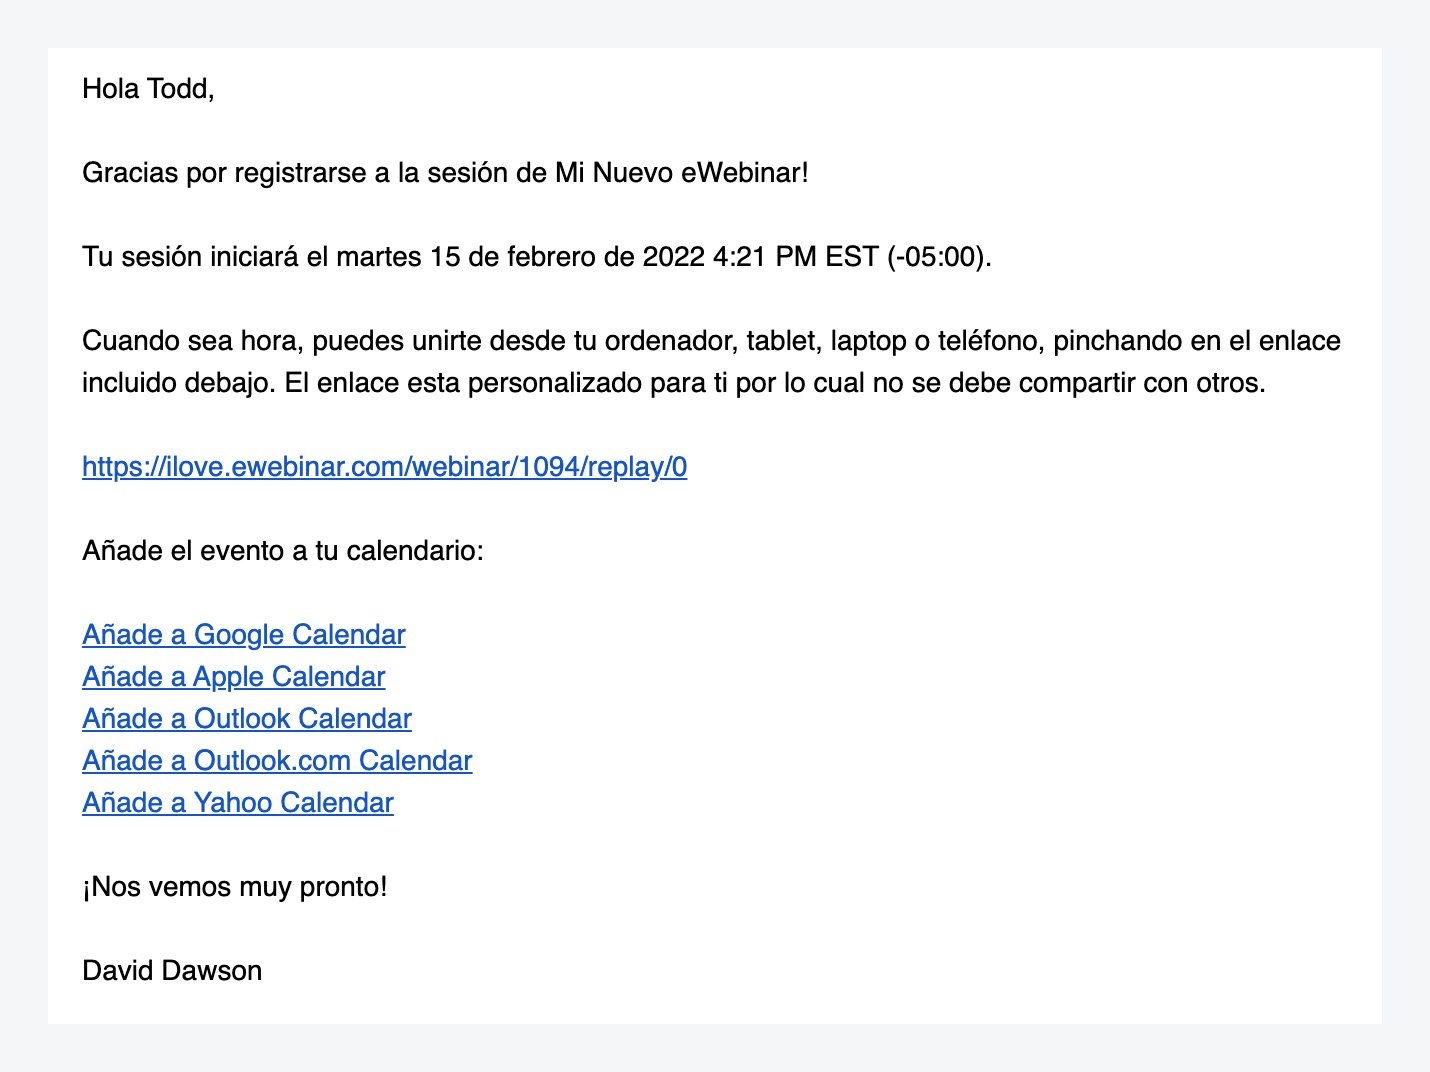 Courriel de confirmation dans le modèle standard d'eWebinar en espagnol